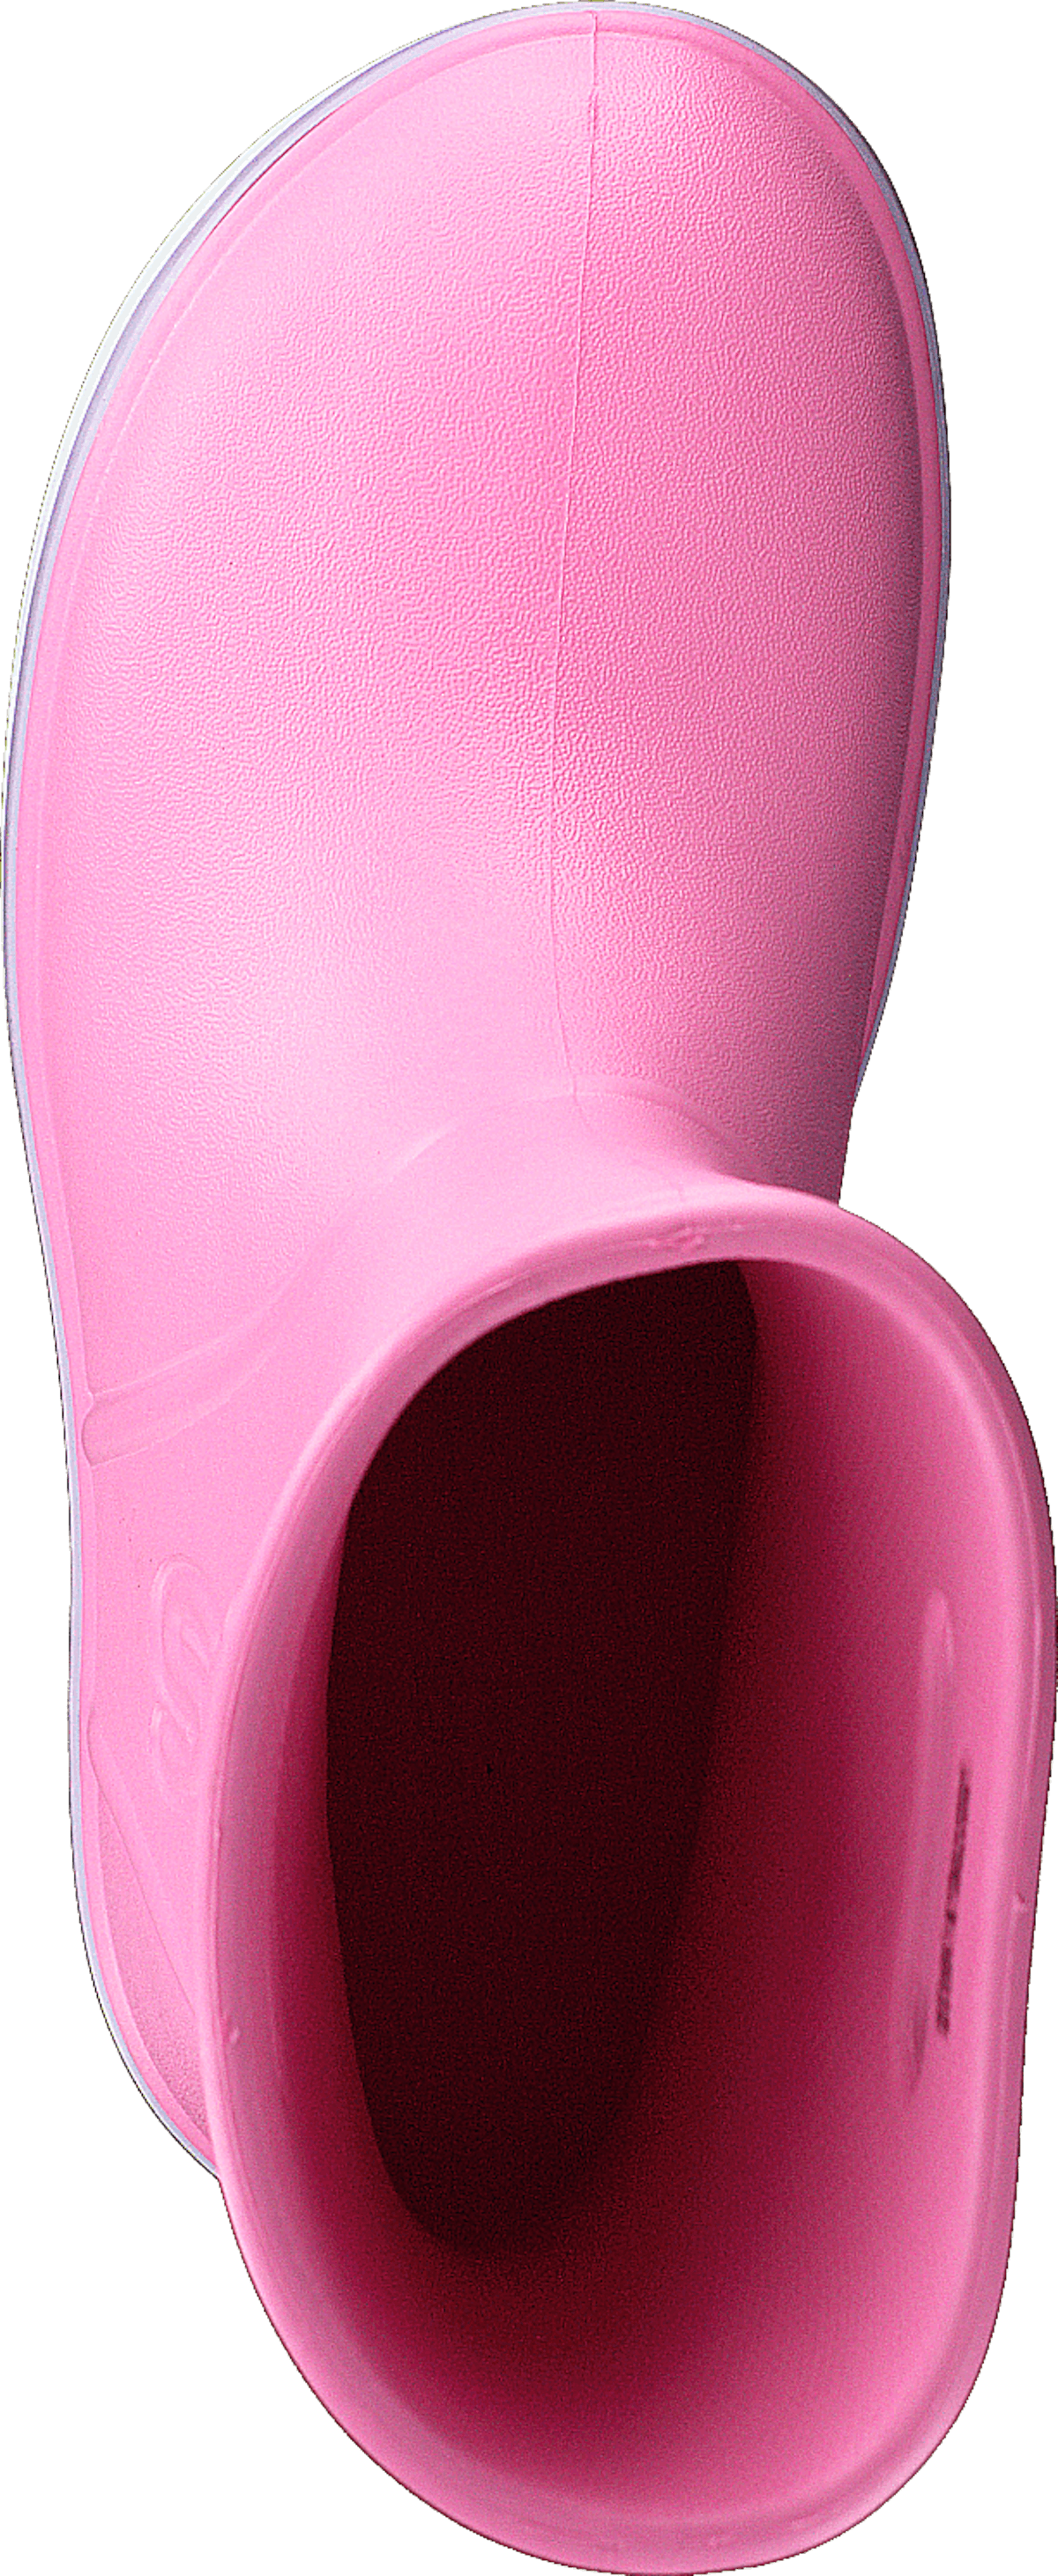 Crocband Rain Boot K Pink Lemonade/lavender